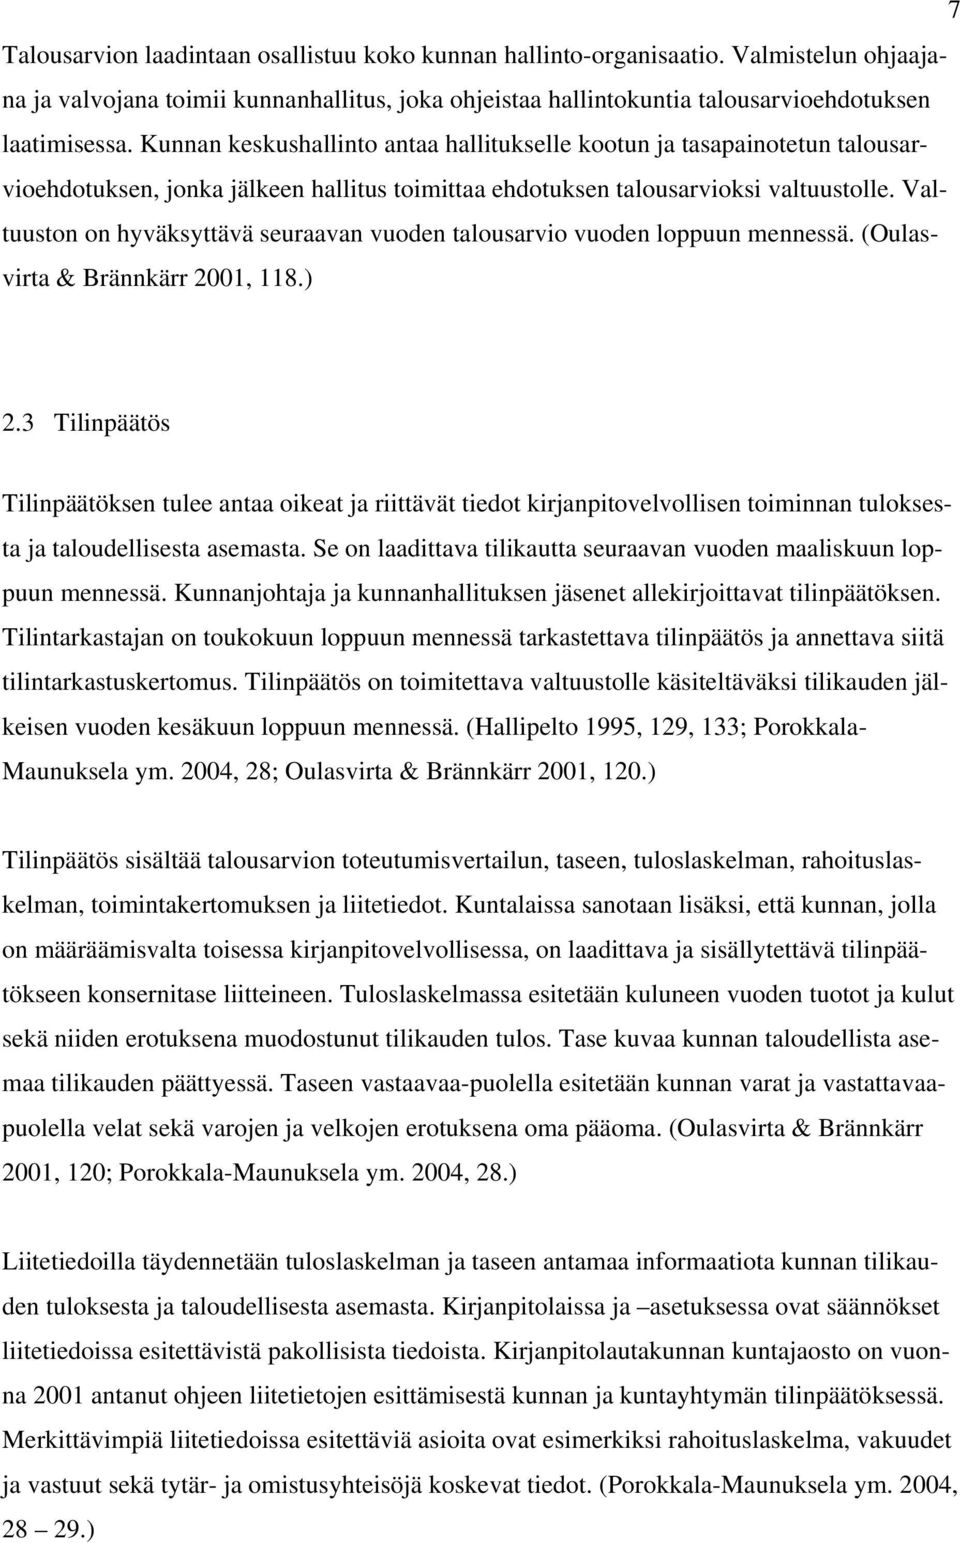 Valtuuston on hyväksyttävä seuraavan vuoden talousarvio vuoden loppuun mennessä. (Oulasvirta & Brännkärr 2001, 118.) 2.